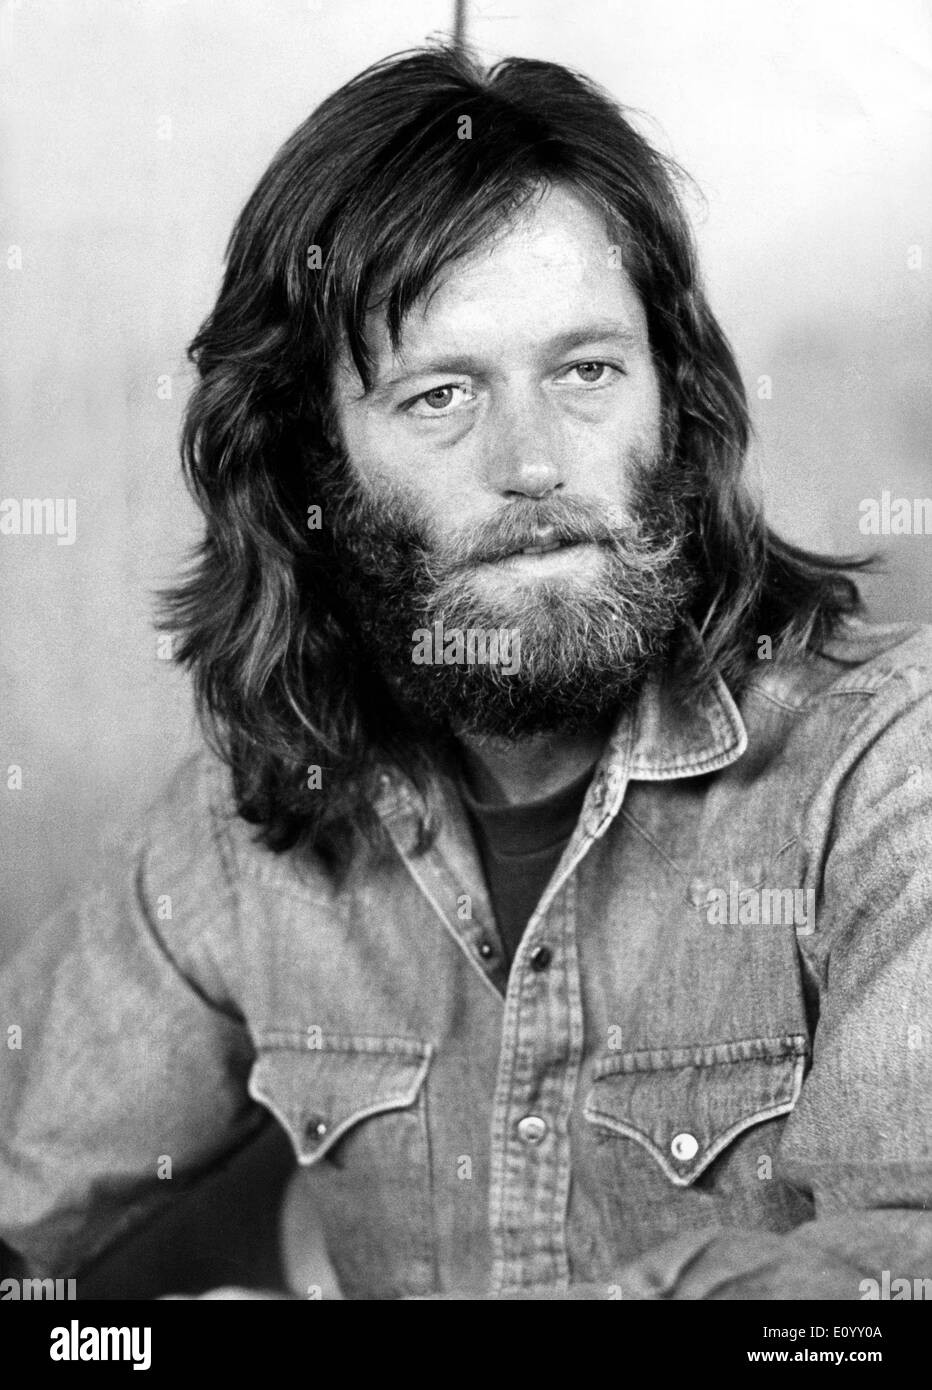 5527847 (900336) Peter FONDA, amerikanischer Schauspieler, Portrait w‰hrend eines Besuches in Kopenhagen 1971. 'GERMANY ONLY! Stock Photo